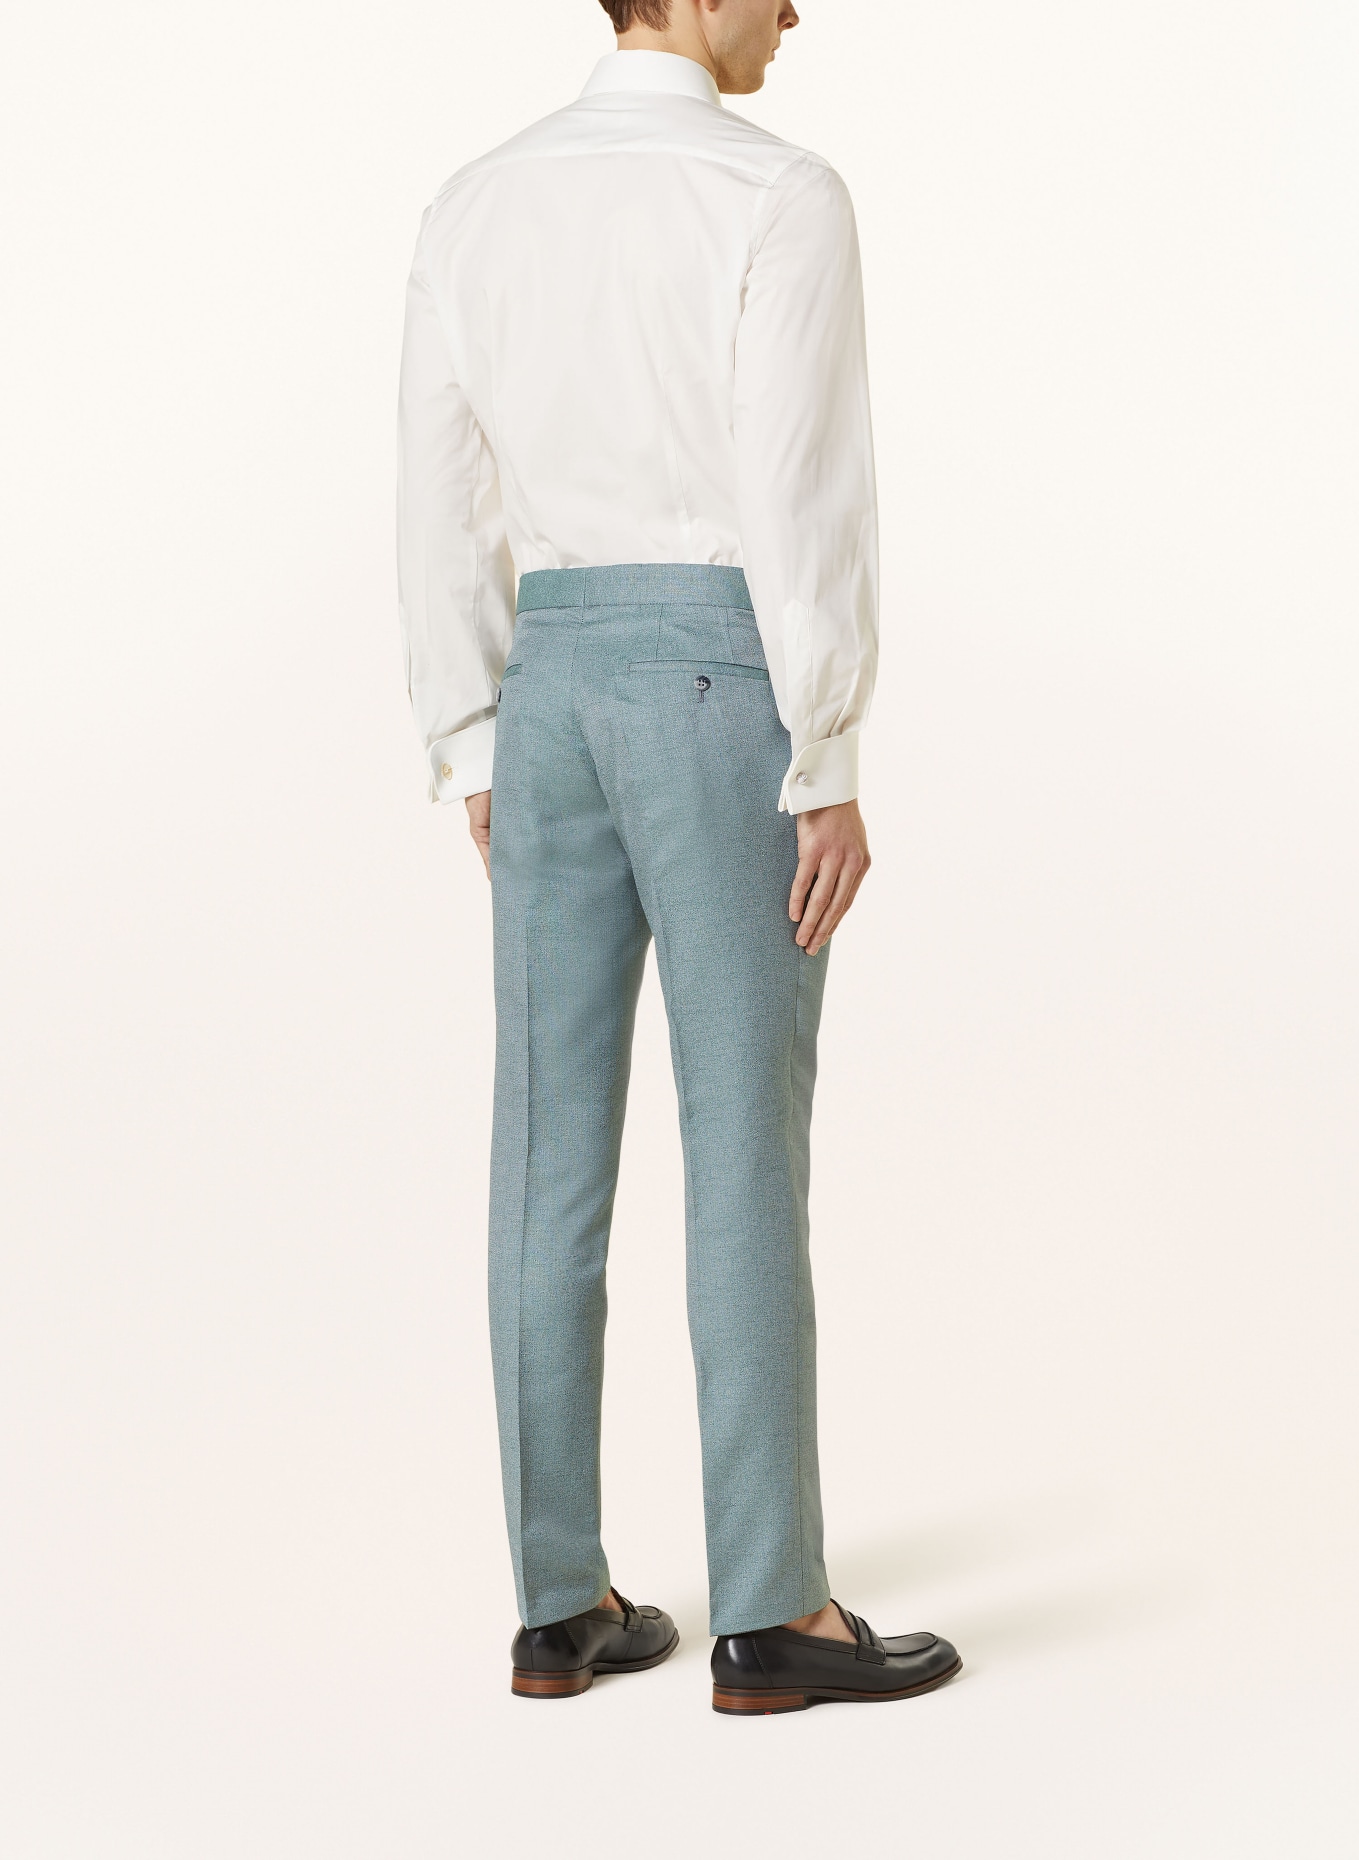 WILVORST Suit trousers extra slim fit, Color: 045 grün (Image 4)